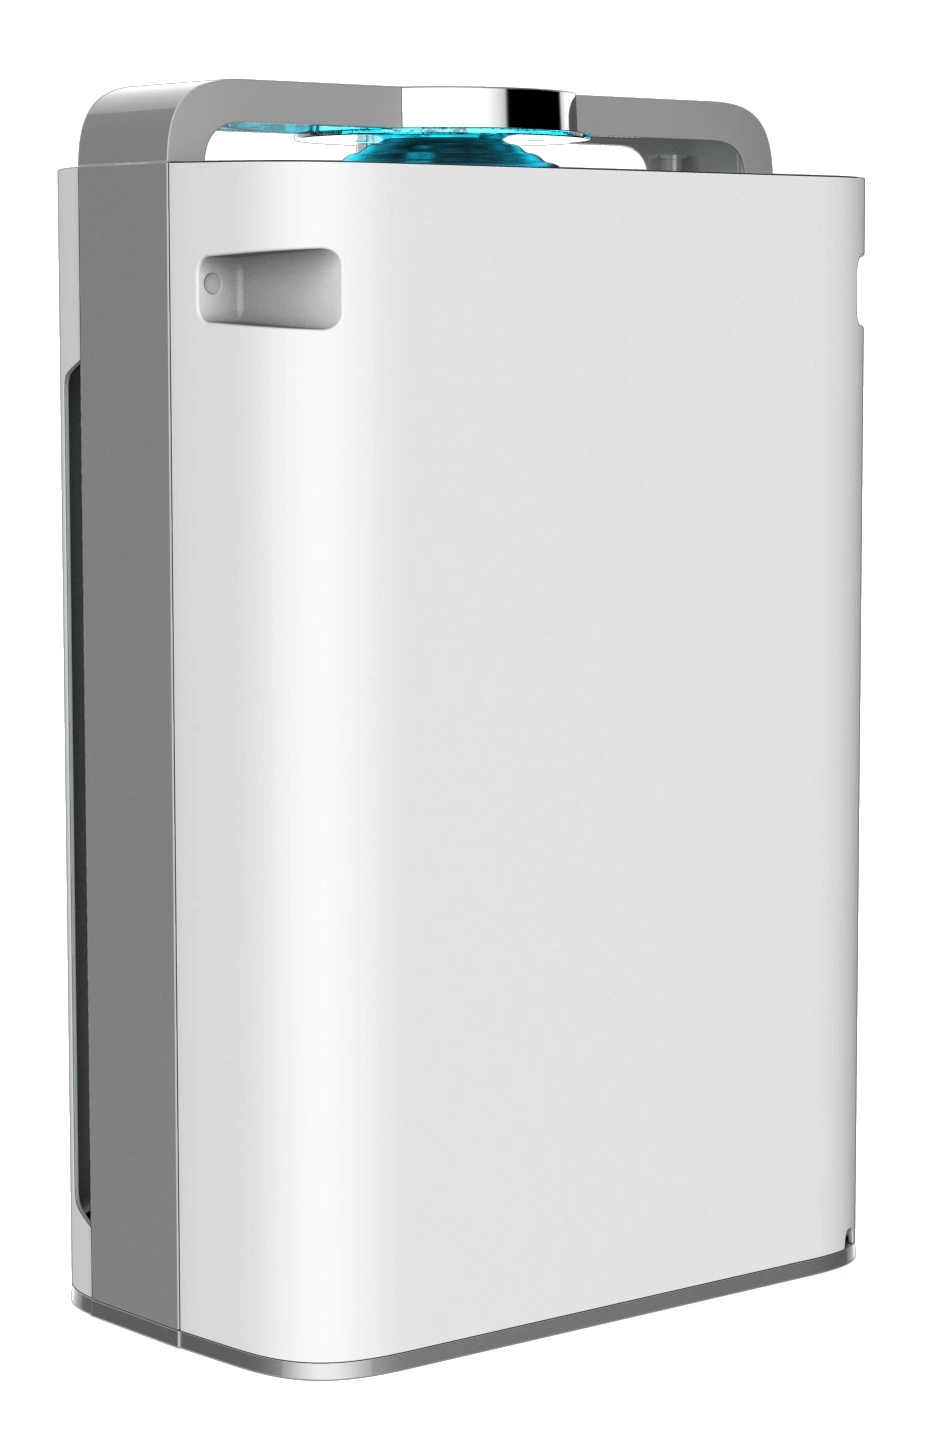 Aparelhos electrodomésticos usando purificadores de ar e o removedor de odor do Purificador de Ar Eletrodomésticos